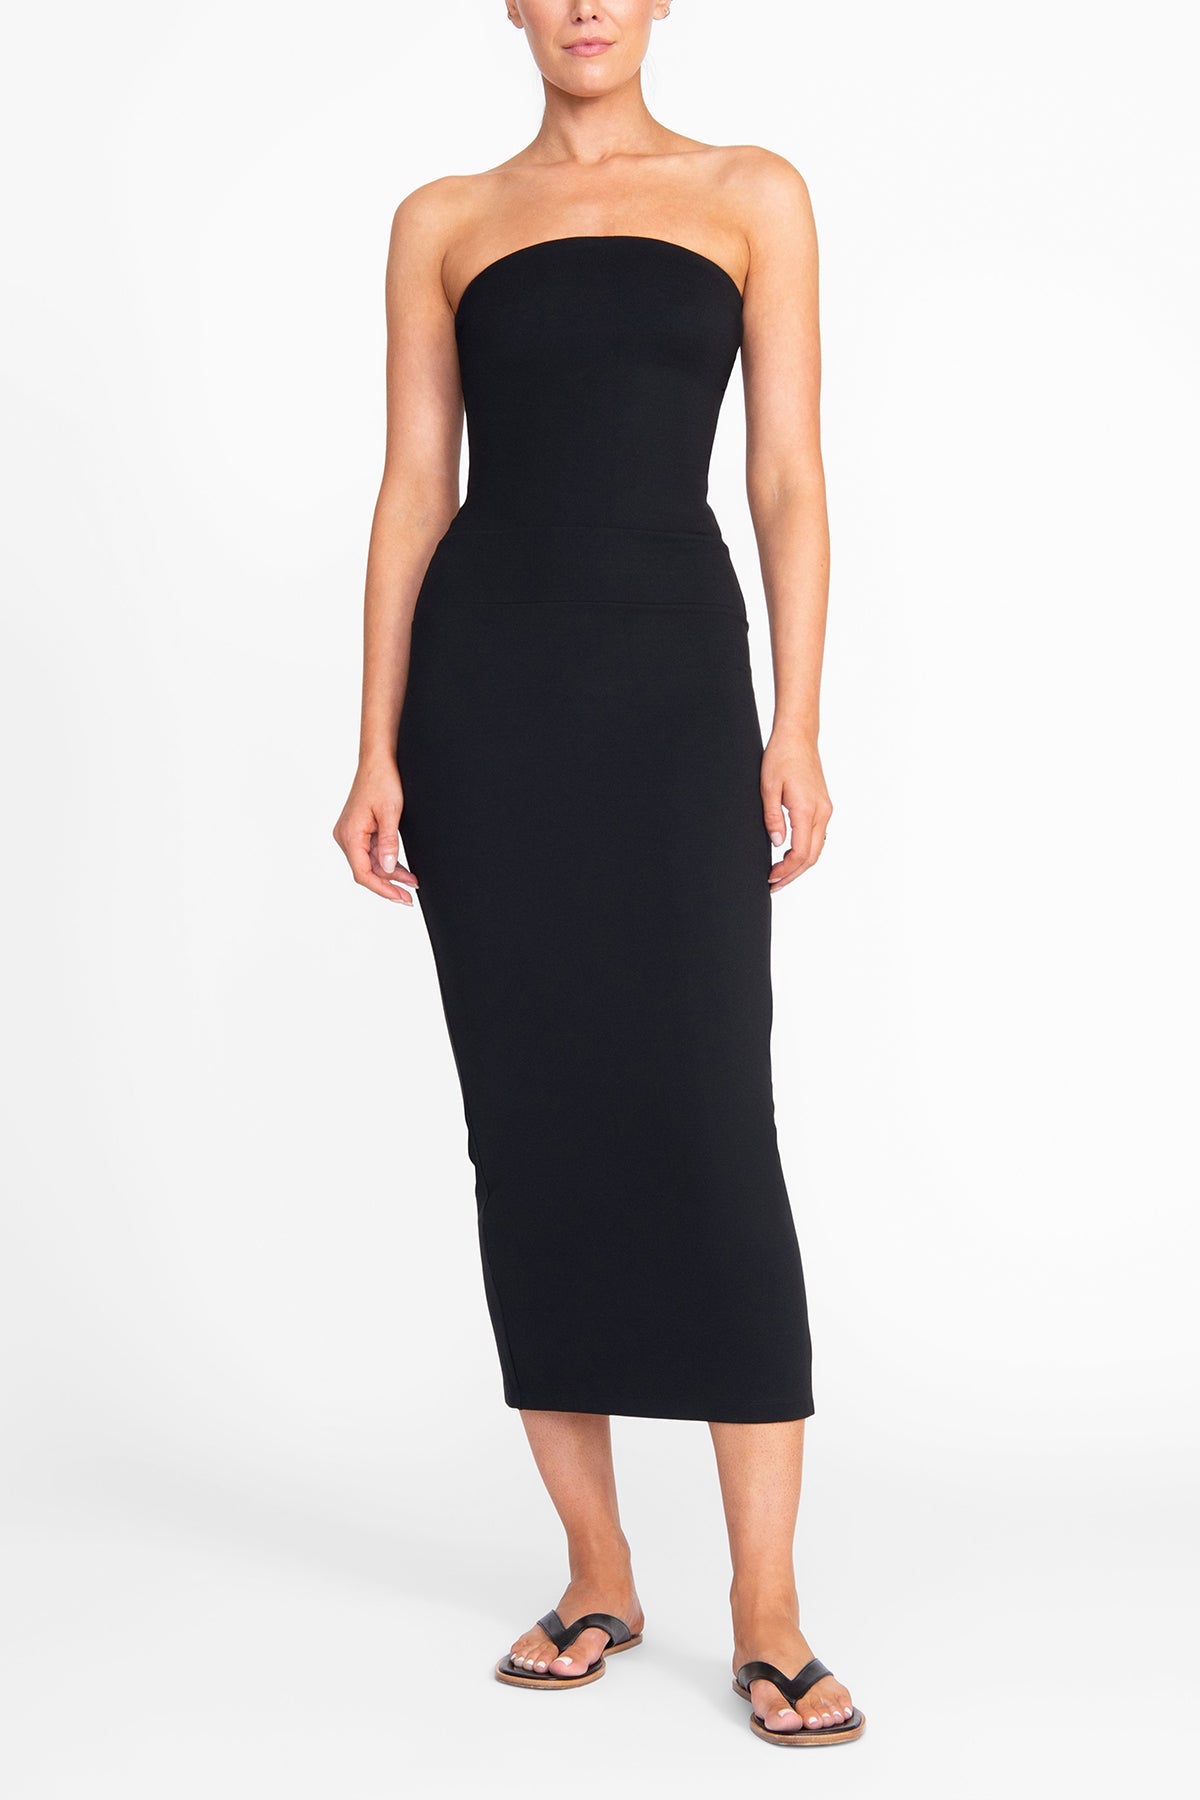 Cortona Dress in Black - shop-olivia.com